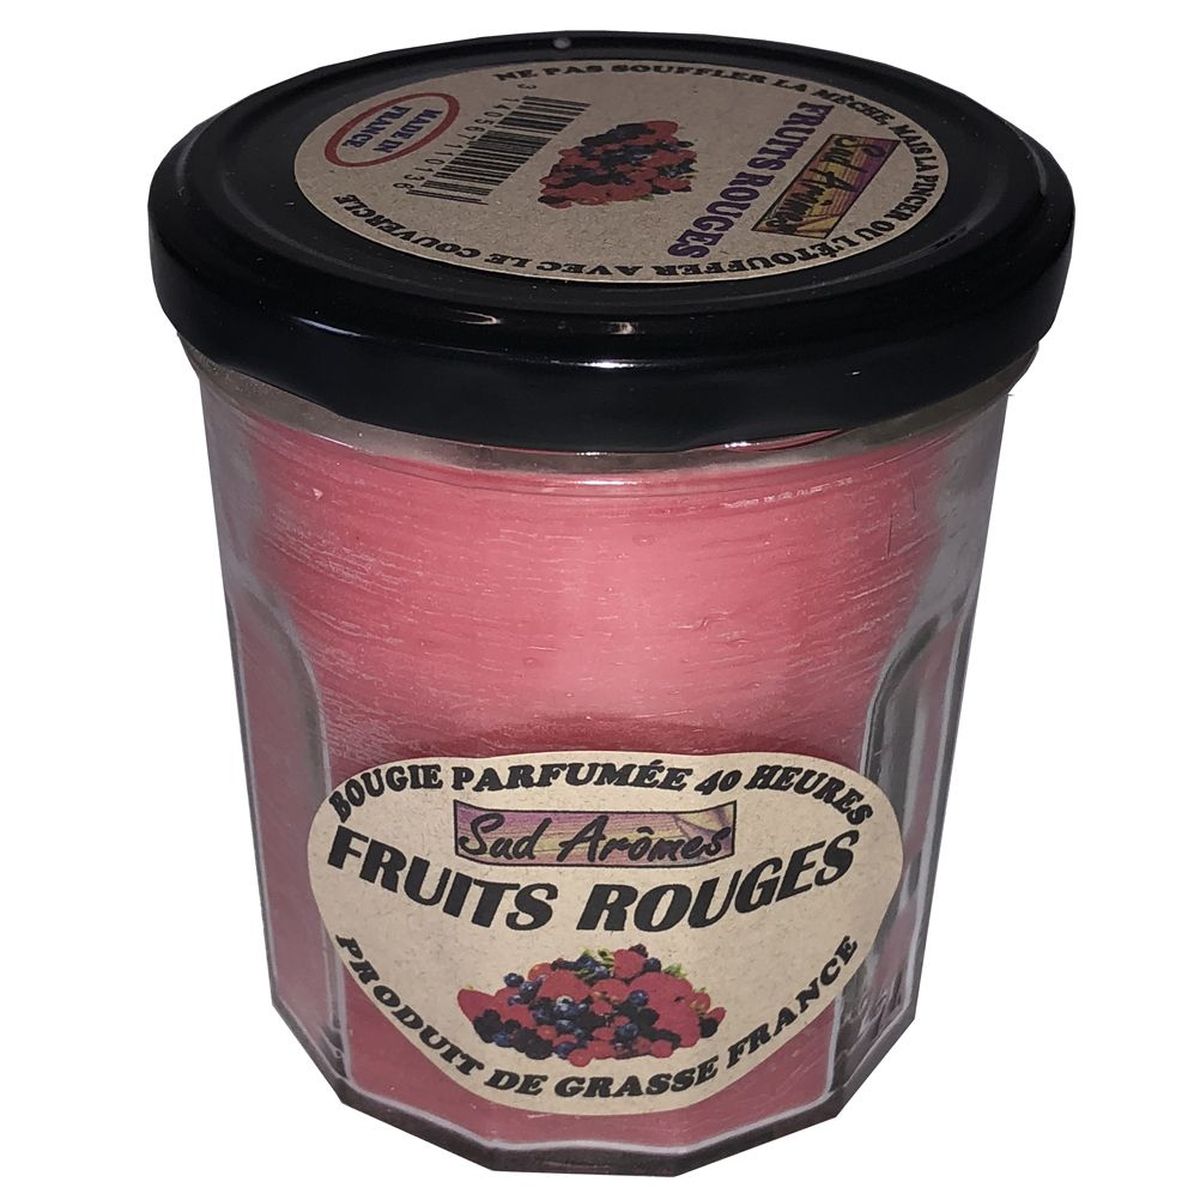 Bougie Sud Armes 40 heures Parfum de Grasse - Fruits Rouges